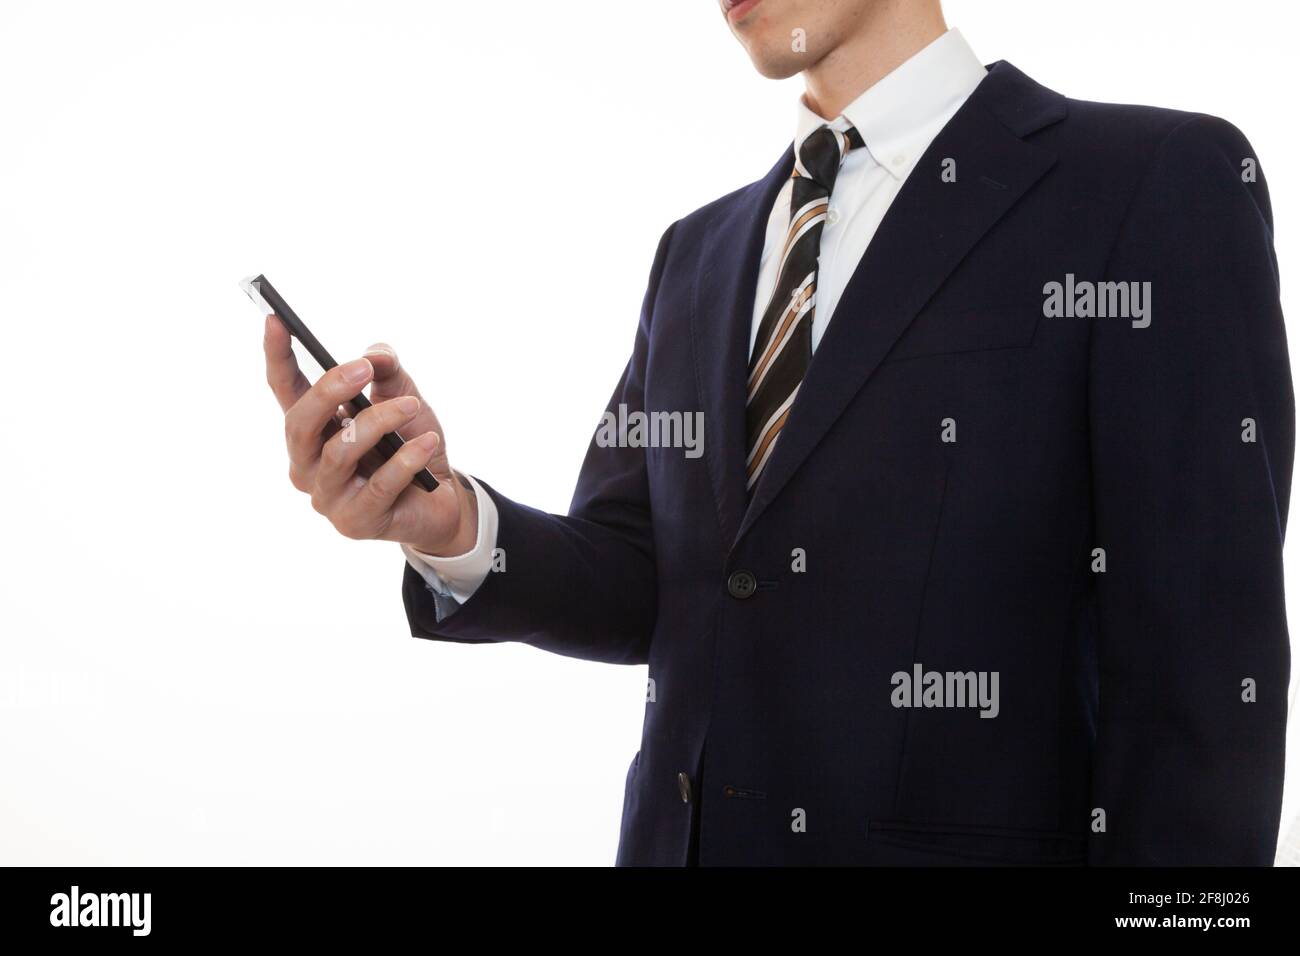 Ein Mann in einem Anzug, der ein Smartphone in seinem Gerät betreibt Rechte Hand Stockfoto